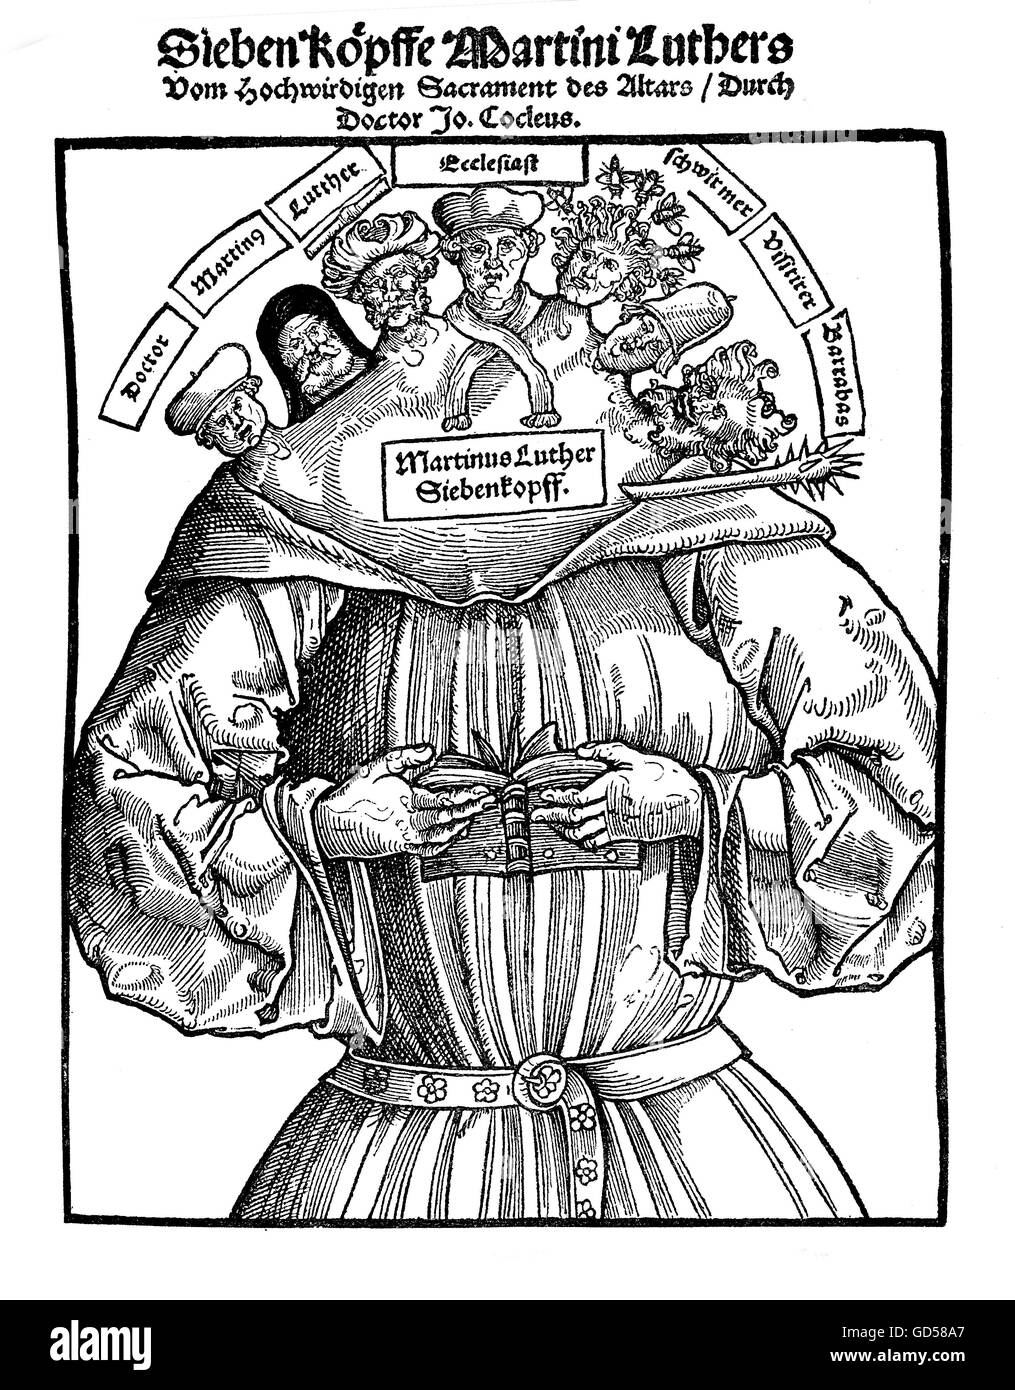 Le 7 teste di Martin Lutero sono didascalie, da sinistra a destra 'Dottore, Martin Luther, Ecclesiast, Vagabond, Pfister (Backer?), Barabba". La satira presumibilmente nascondersi dietro a queste parole sembra piuttosto criptico. XVI secolo. Foto Stock